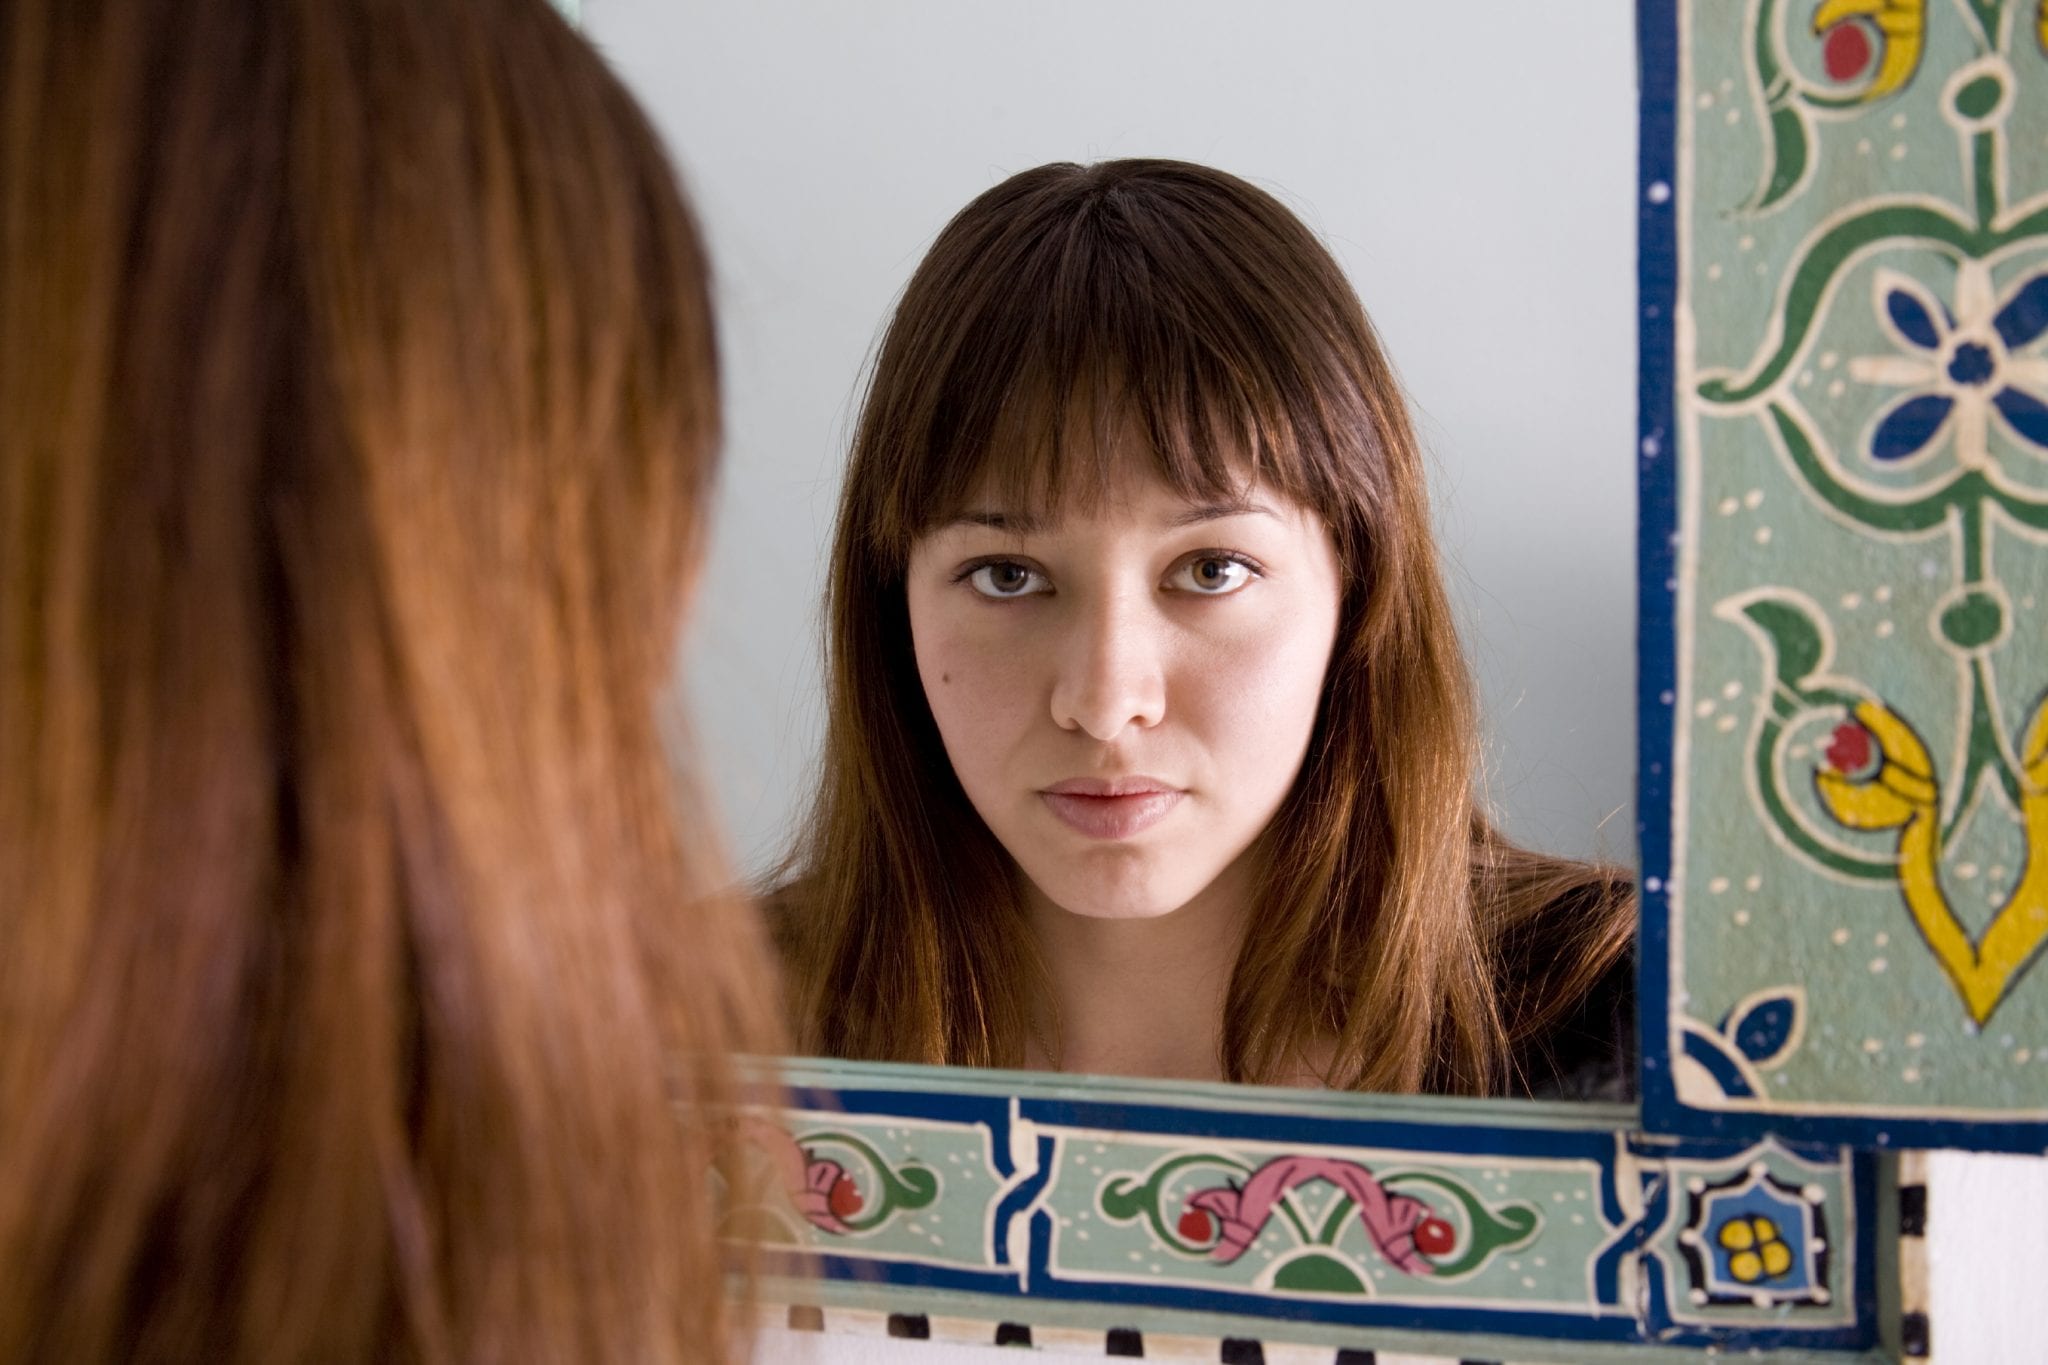 Women in front of mirror